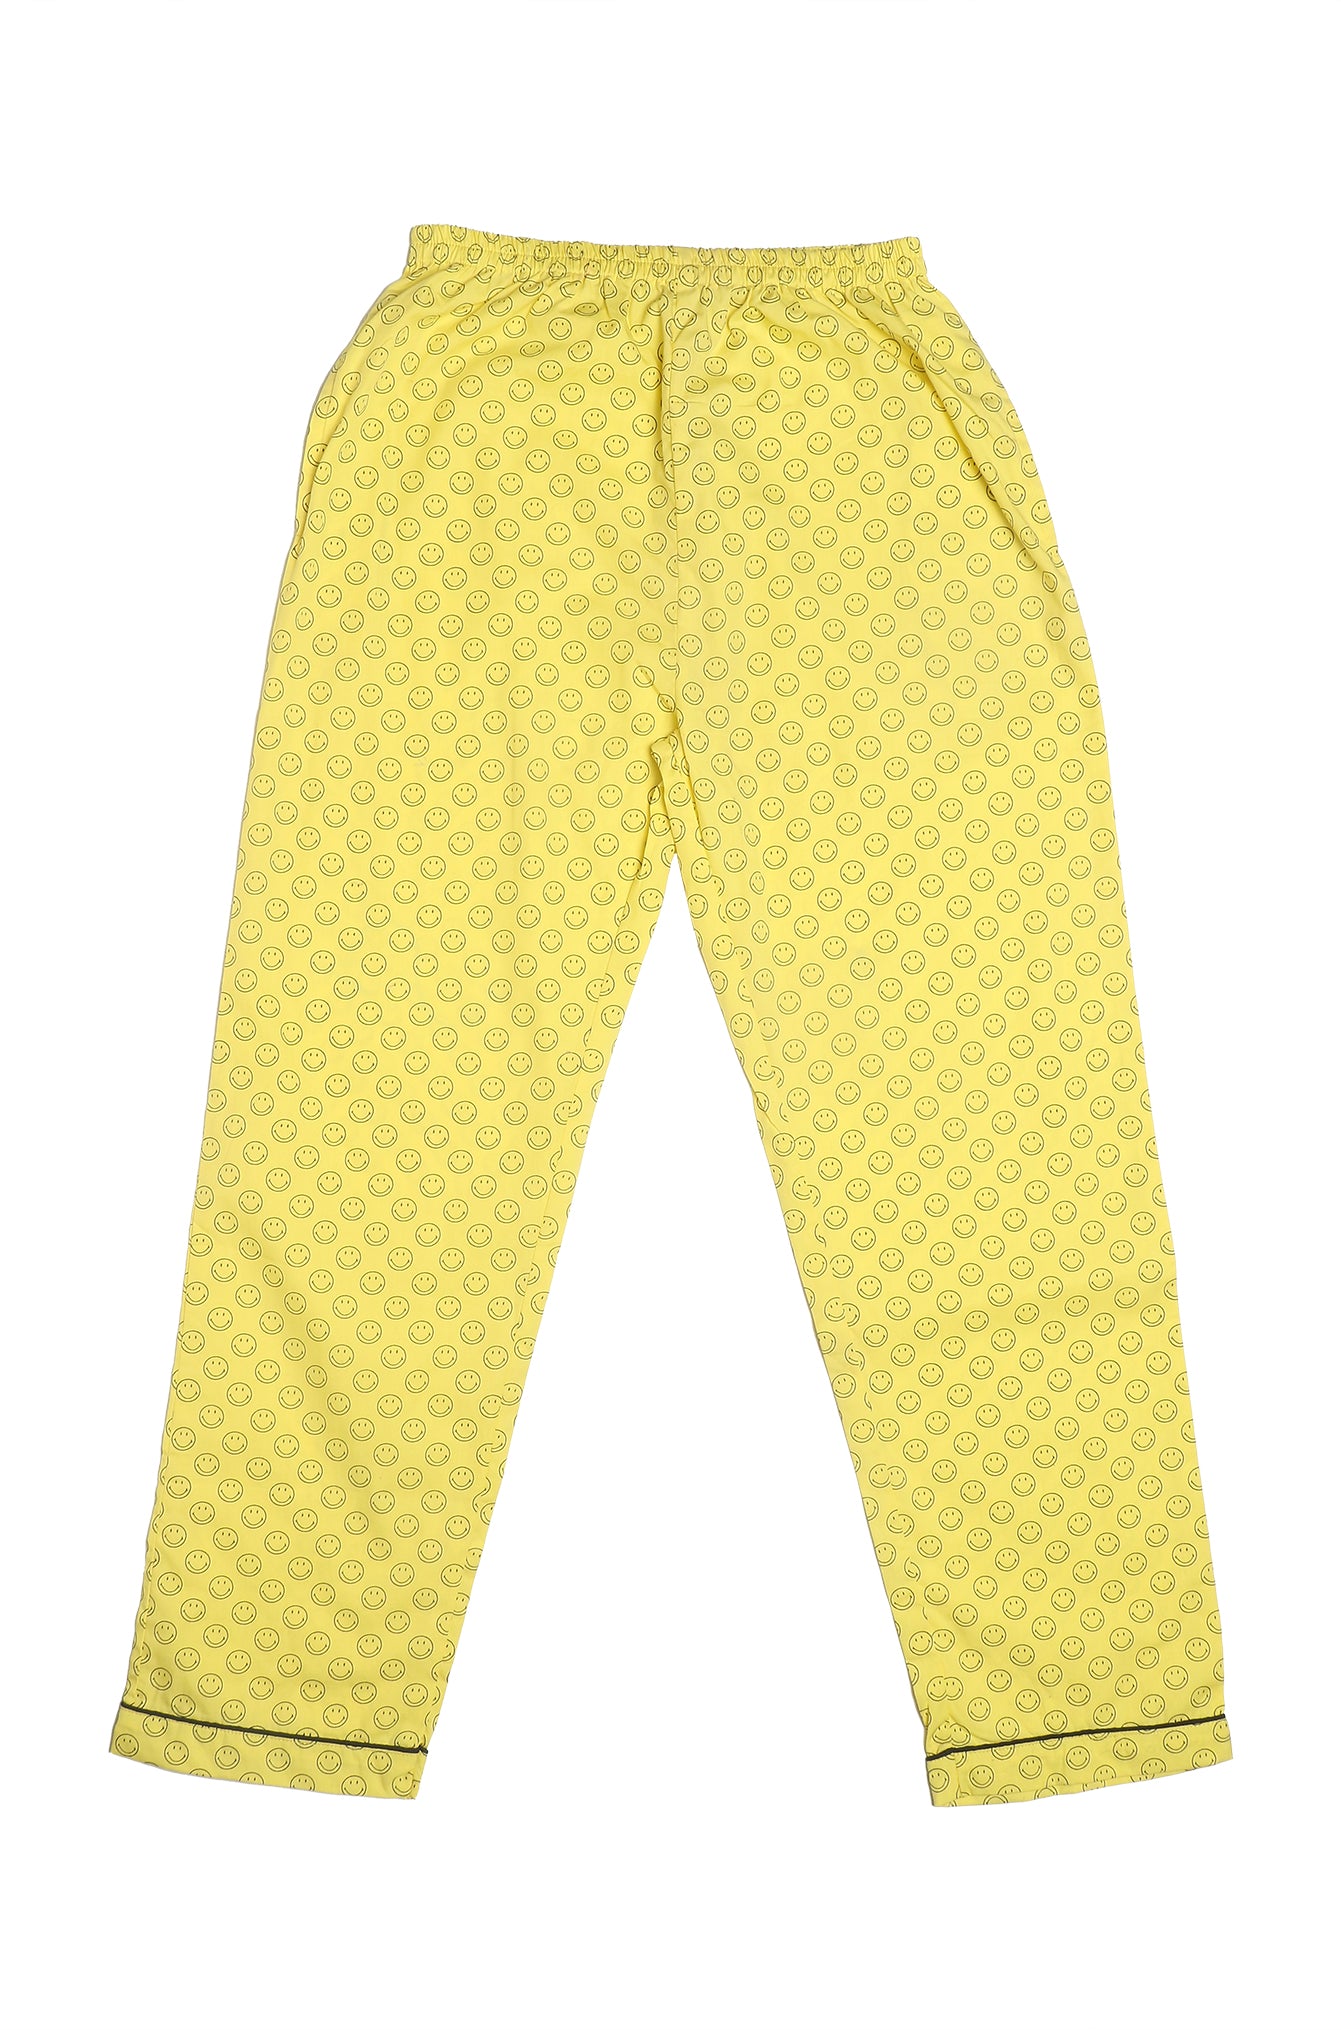 Single Pyjama (CN) [Buy 1 Get 1 Free]